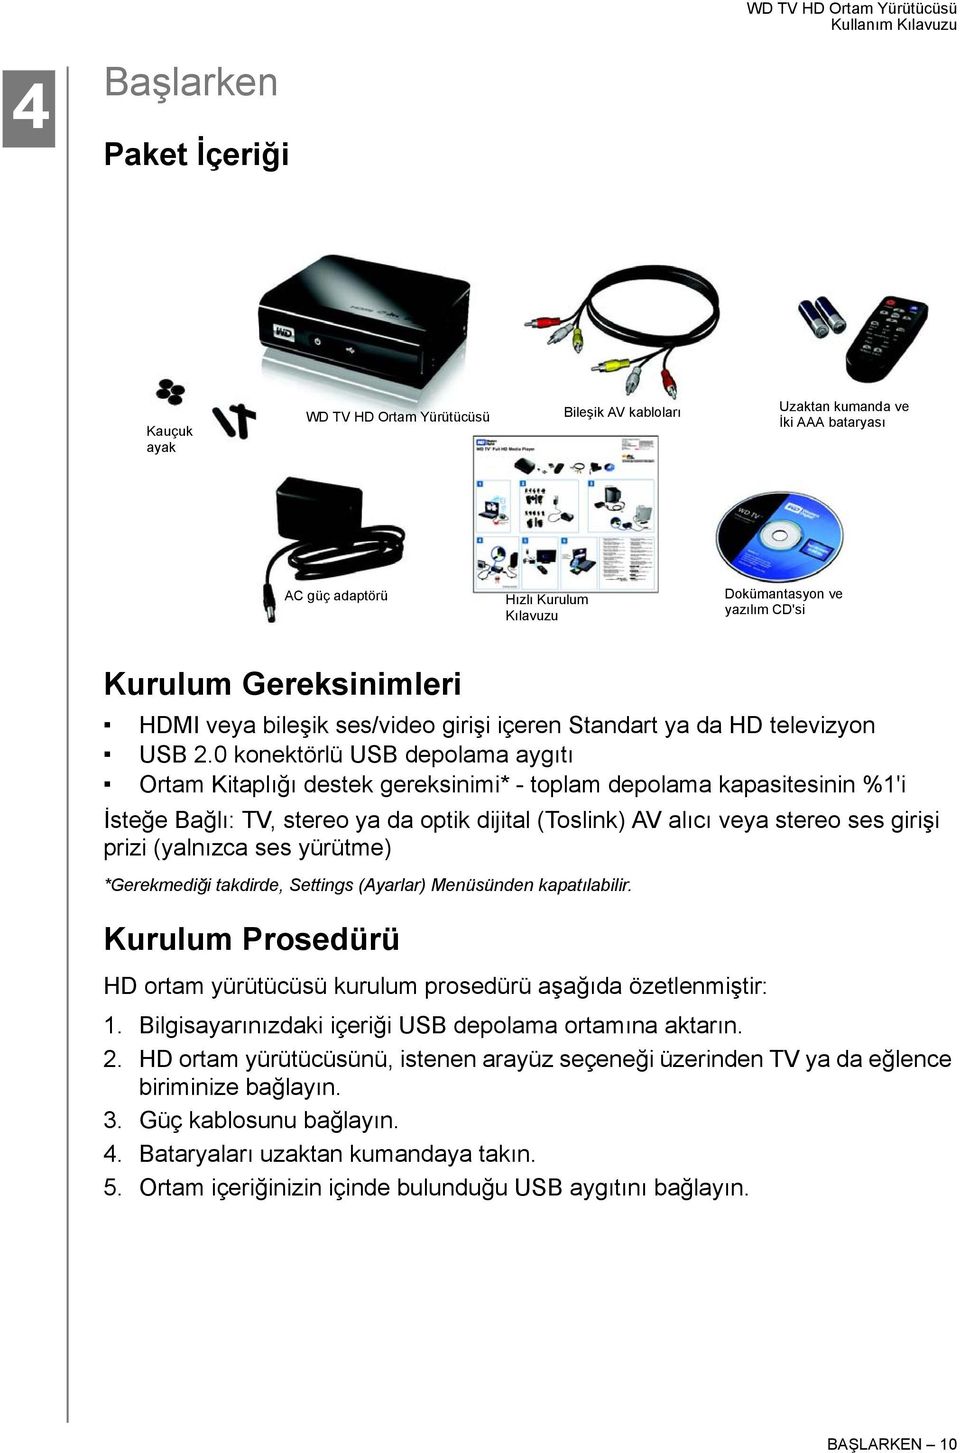 0 konektörlü USB depolama aygıtı Ortam Kitaplığı destek gereksinimi* - toplam depolama kapasitesinin %1'i İsteğe Bağlı: TV, stereo ya da optik dijital (Toslink) AV alıcı veya stereo ses girişi prizi